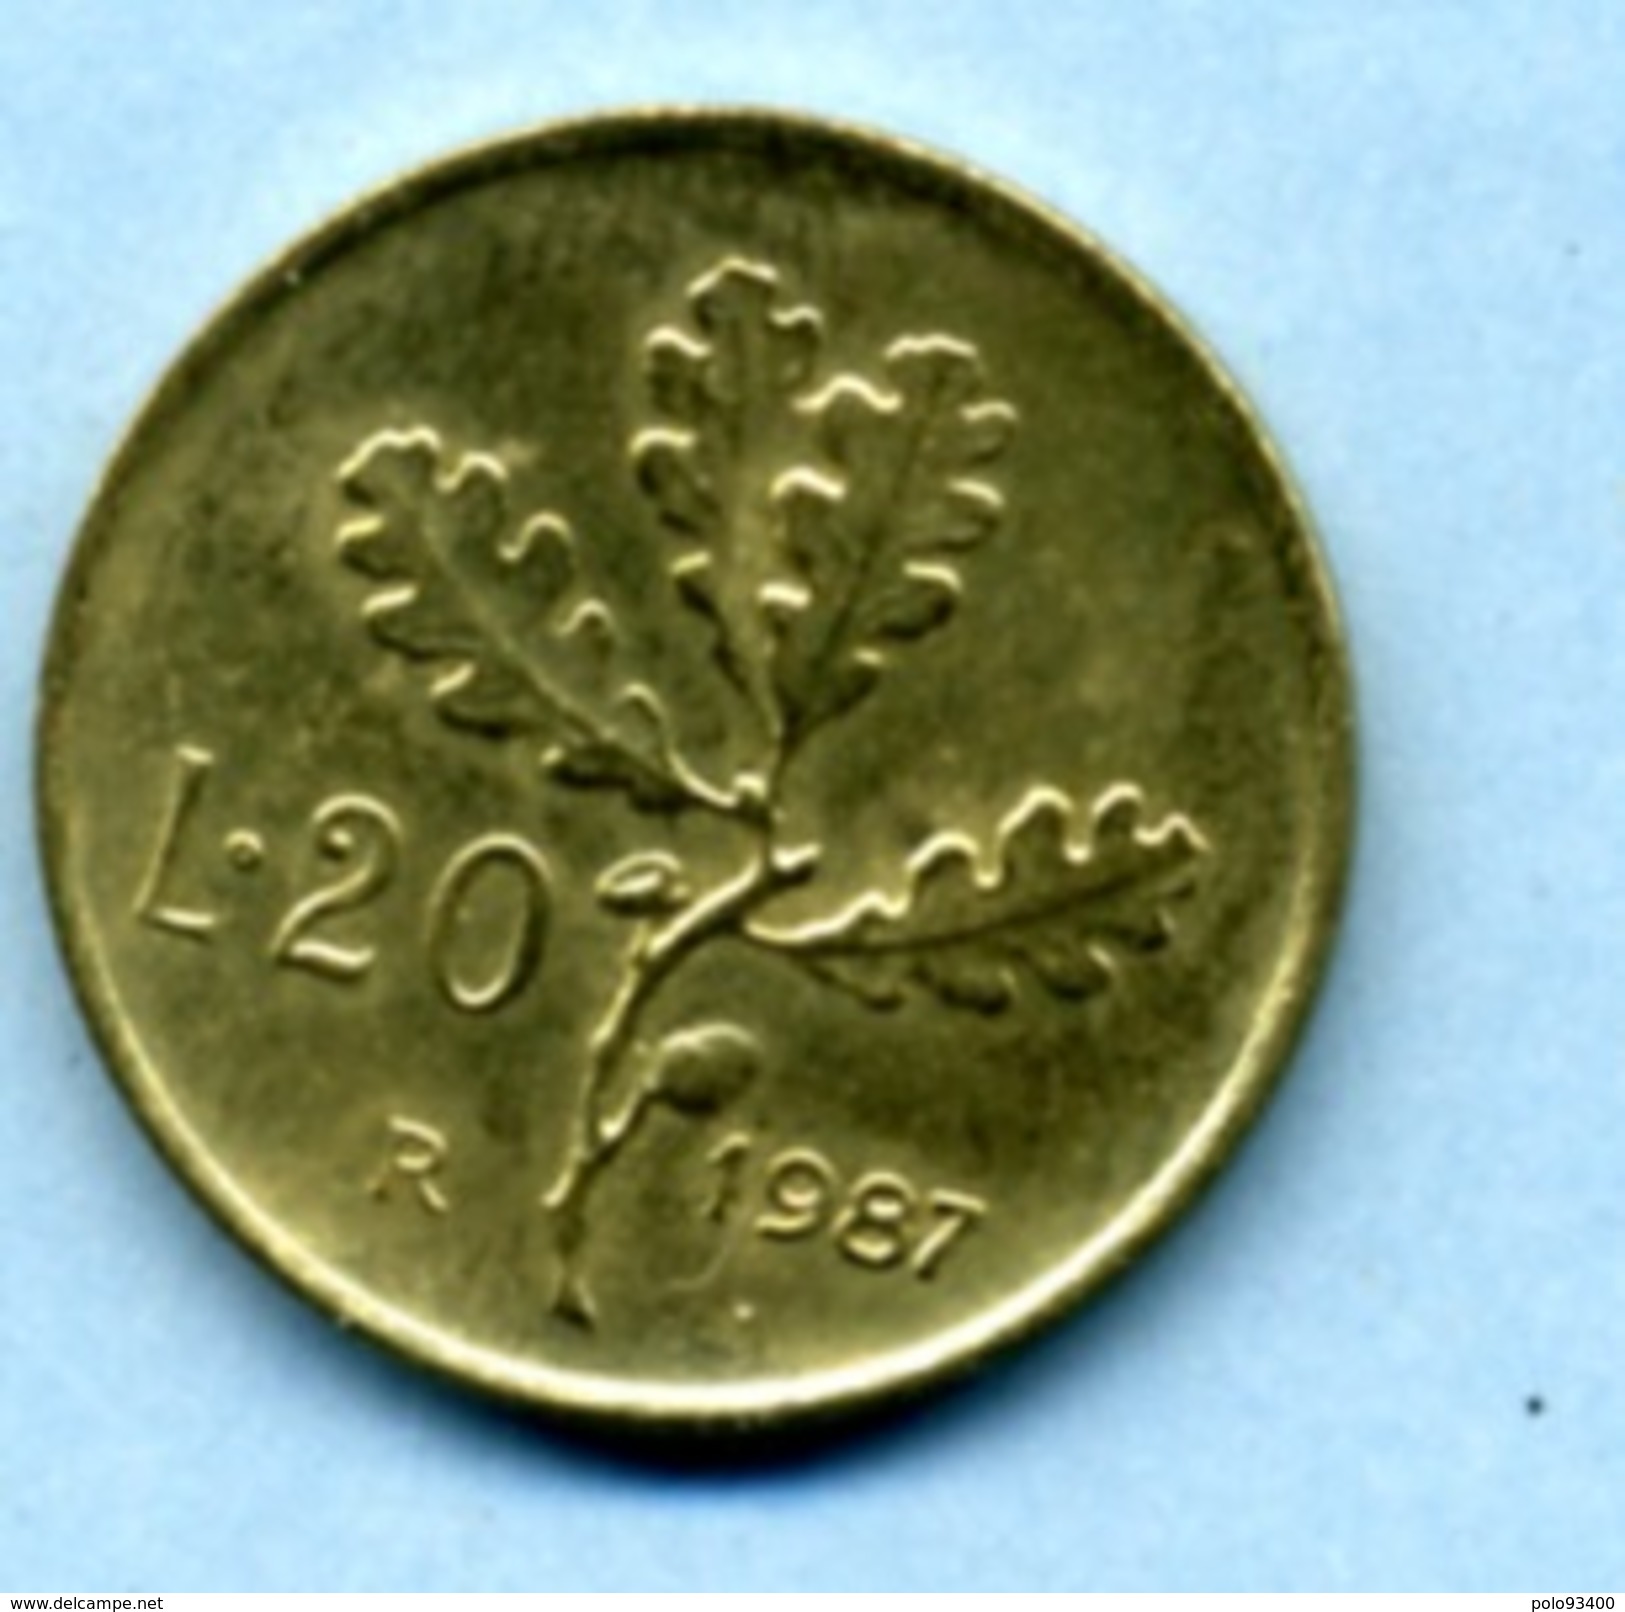 1987  20 LIRES - 20 Liras